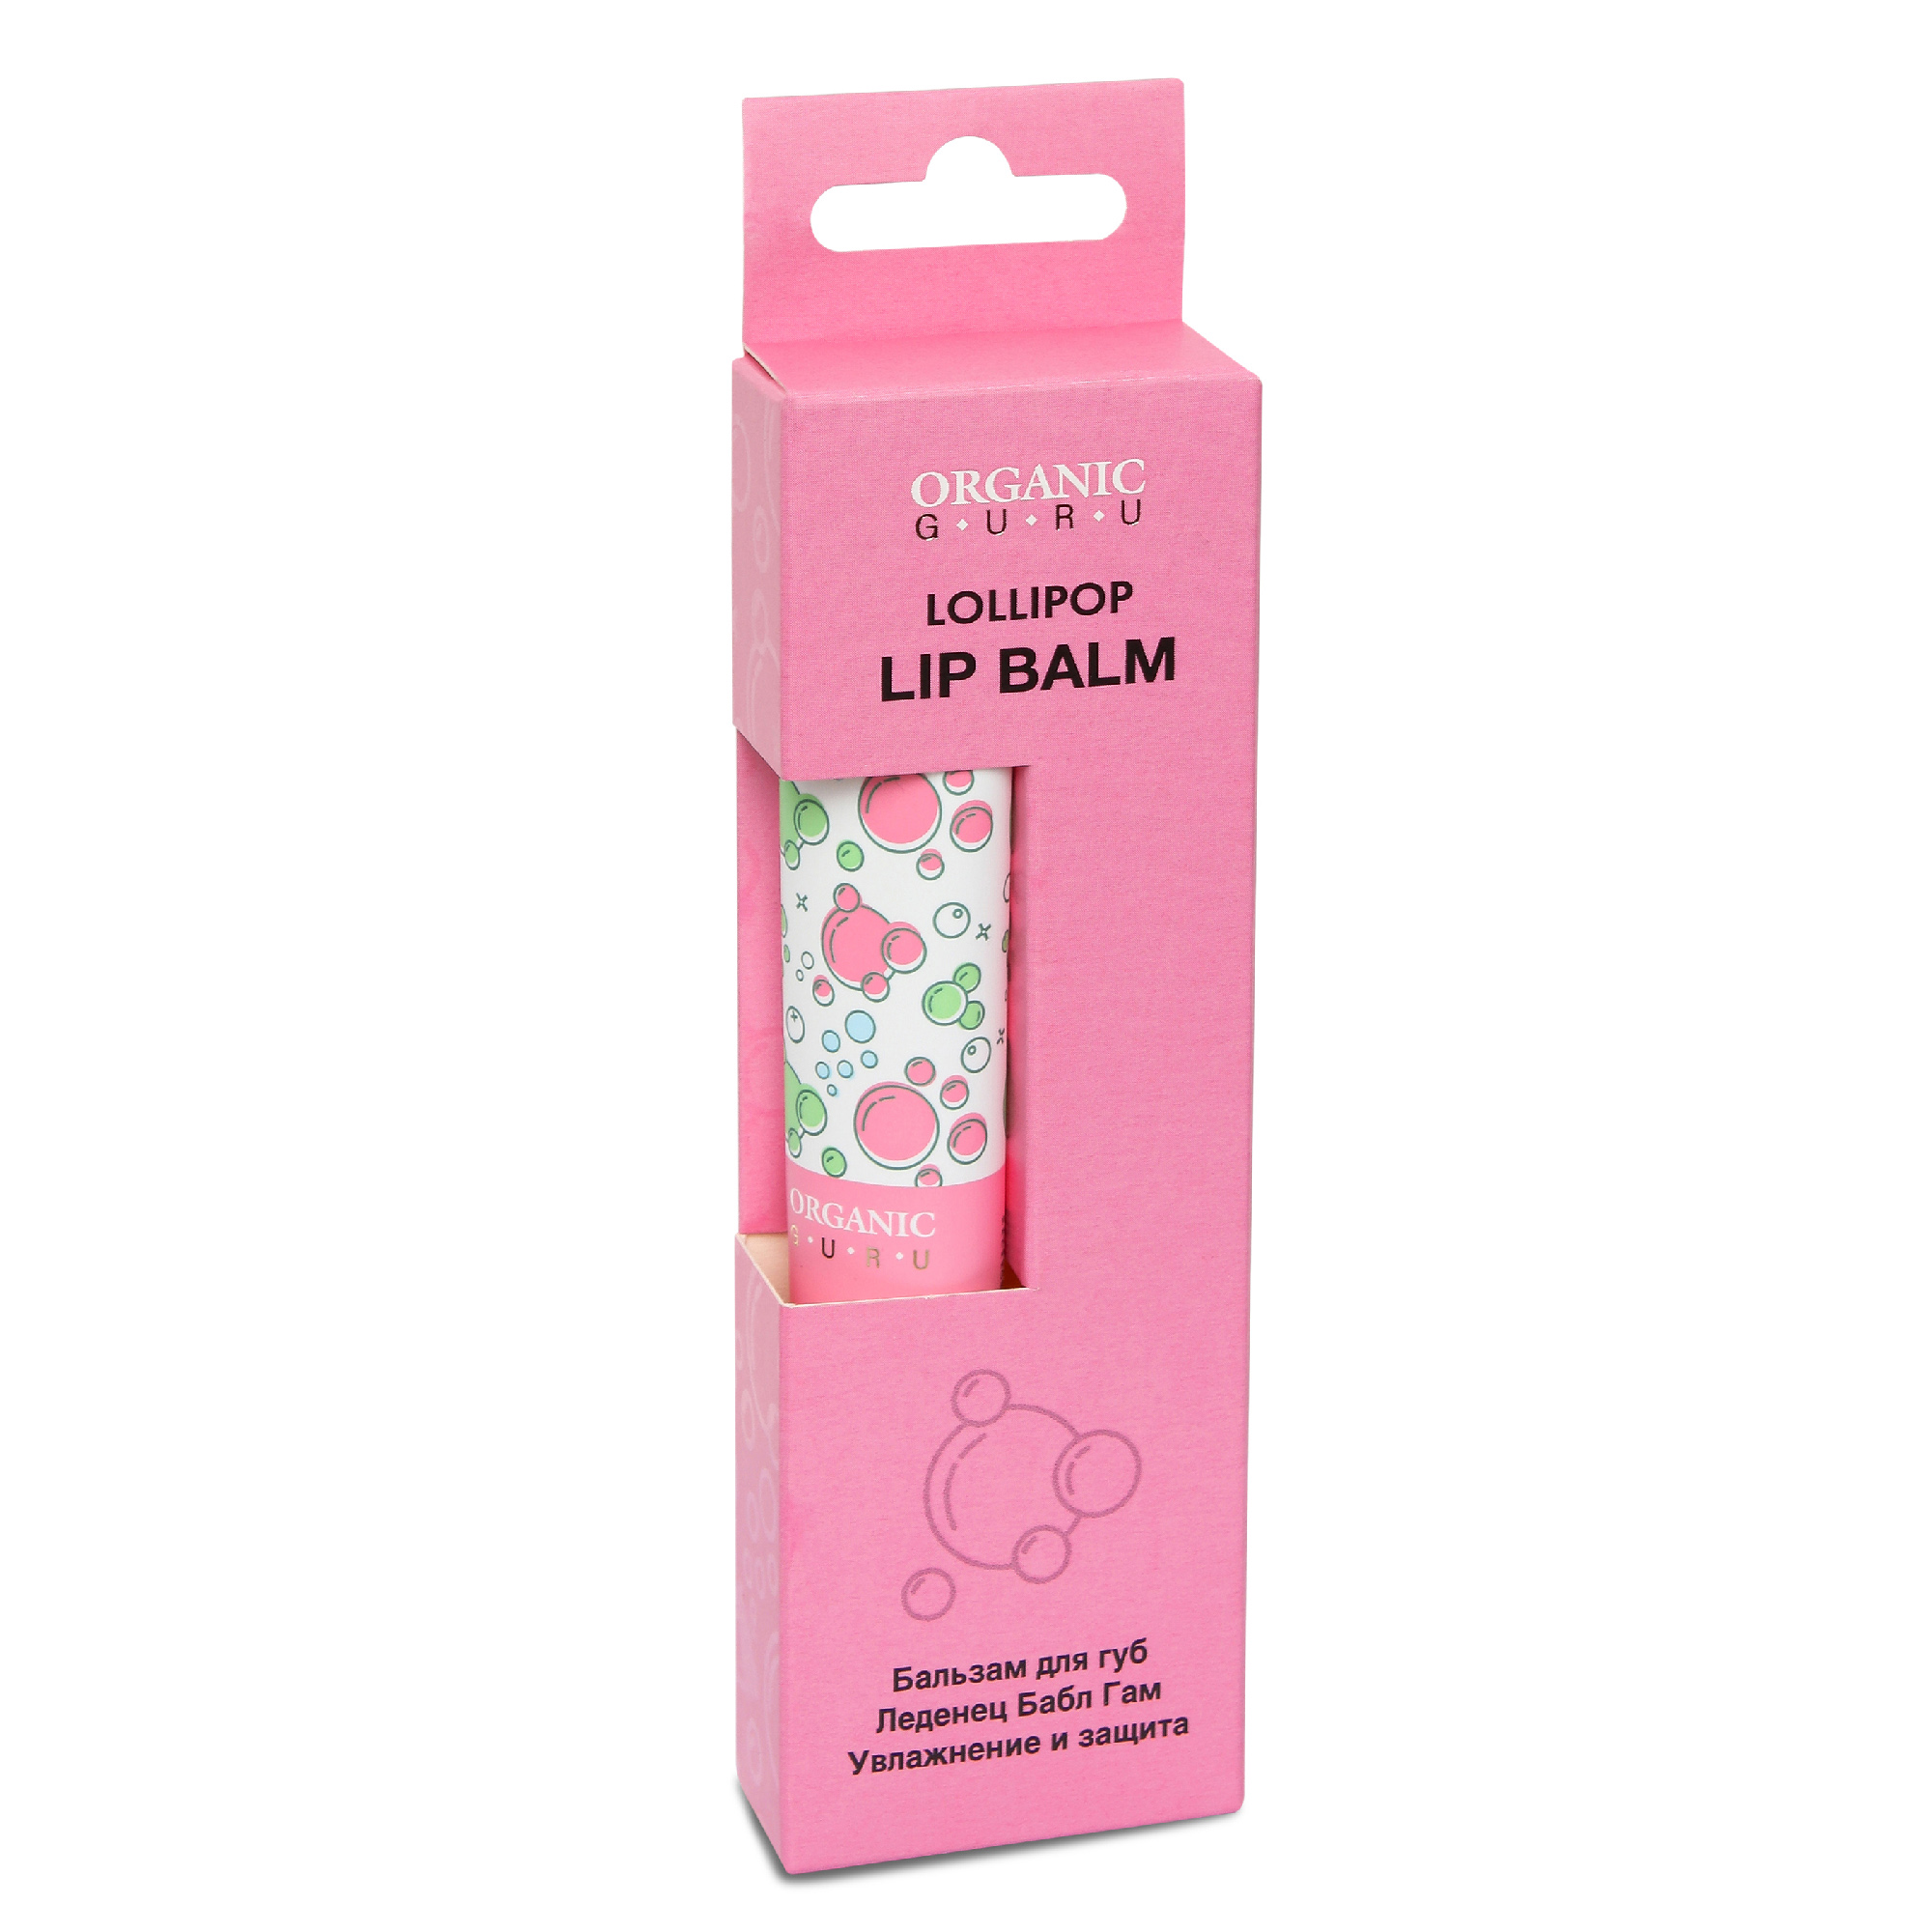 Бальзам для губ Organic Guru Lollipop 18 мл бальзам для губ organic guru lip balm lollipop 18 мл